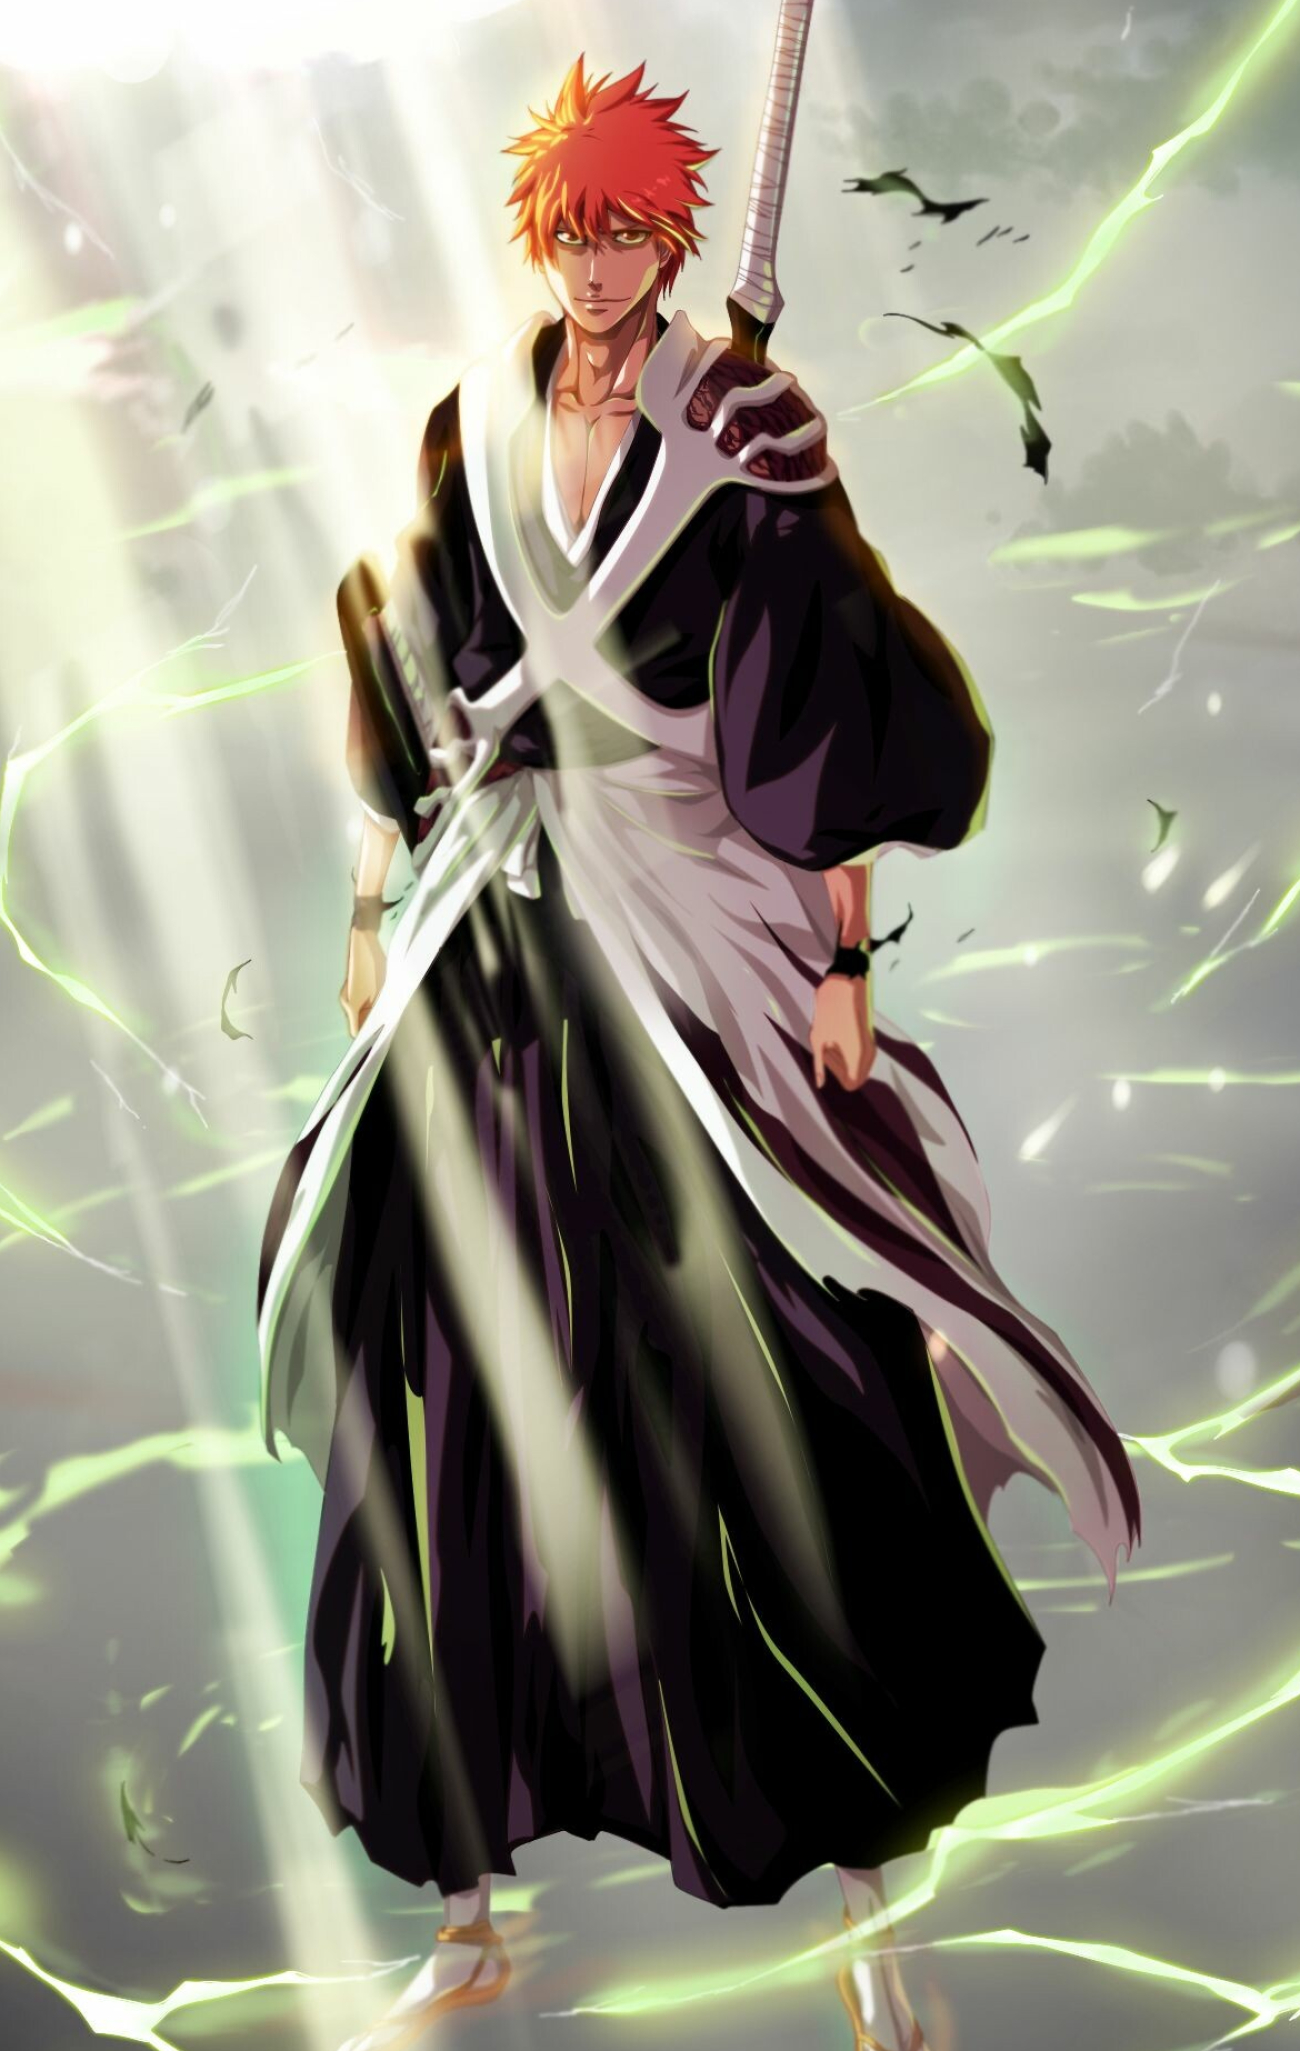 Bleach: Thousand Year Blood War: Kurosaki Ichigo, the son of Isshin and Masaki Kurosaki, Anime. 1300x2060 HD Wallpaper.